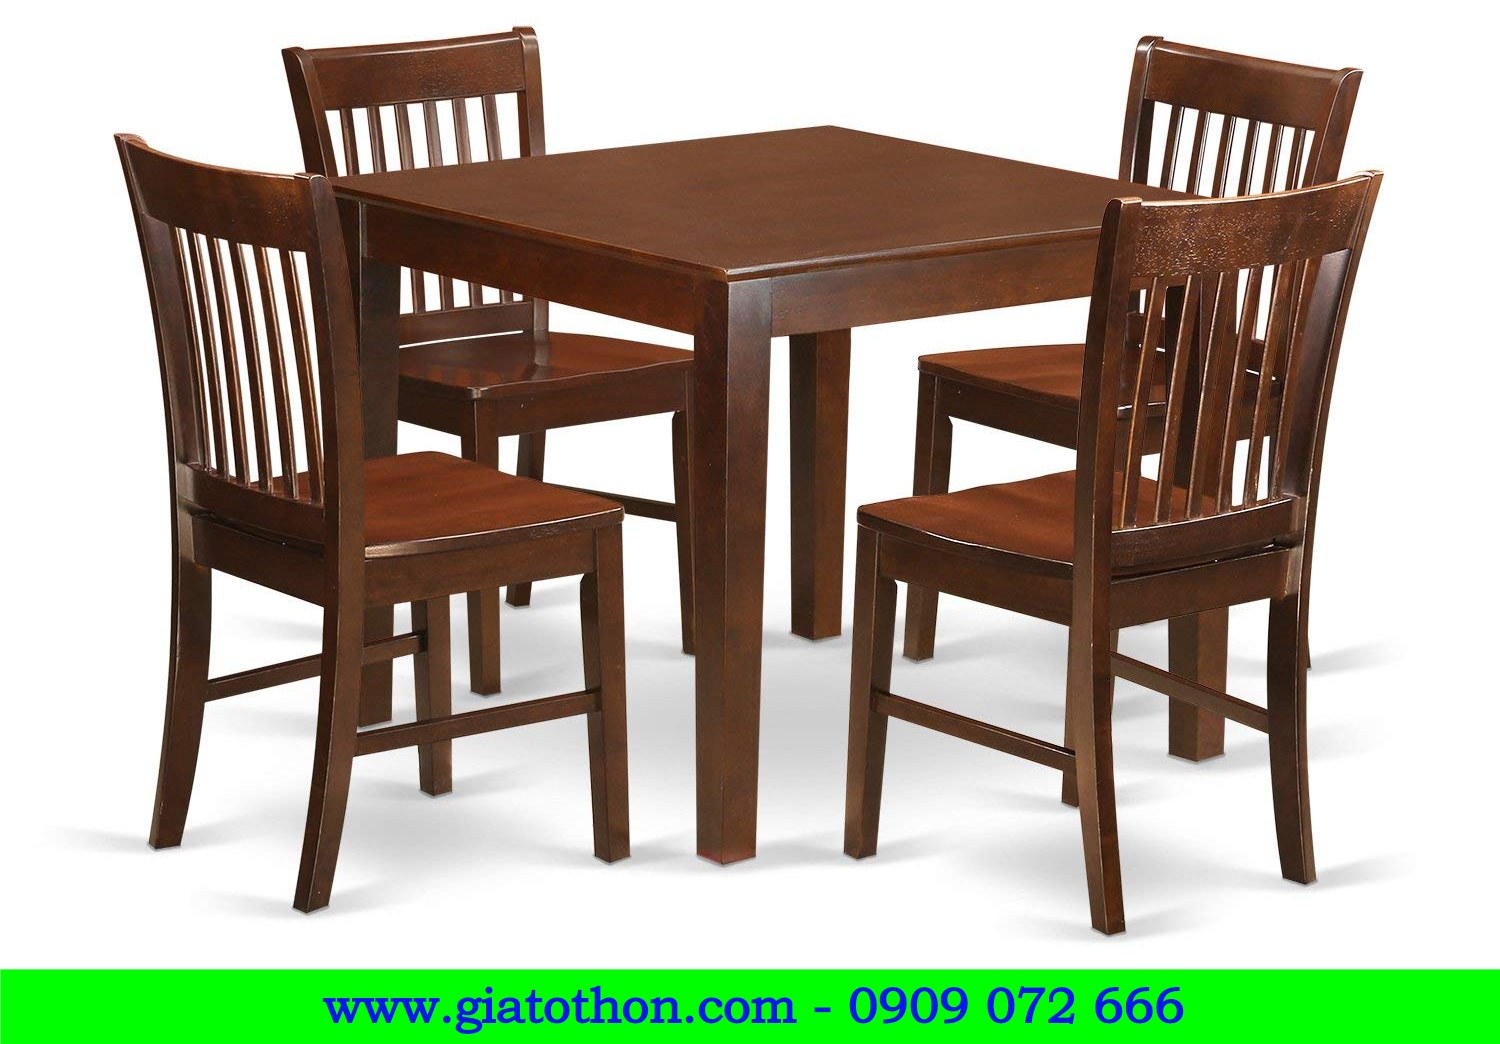 bàn ghế nhà hàng, bàn ghế gỗ trong nhà, bàn ghế nhà ăn, bàn ghế gỗ cho nhà bếp, bàn ghế gỗ nhà ăn giá rẻ, chuyên sản xuất bàn ghế gỗ nhà ăn, chuyên sản xuất bàn ghế gỗ cho nhà hàng